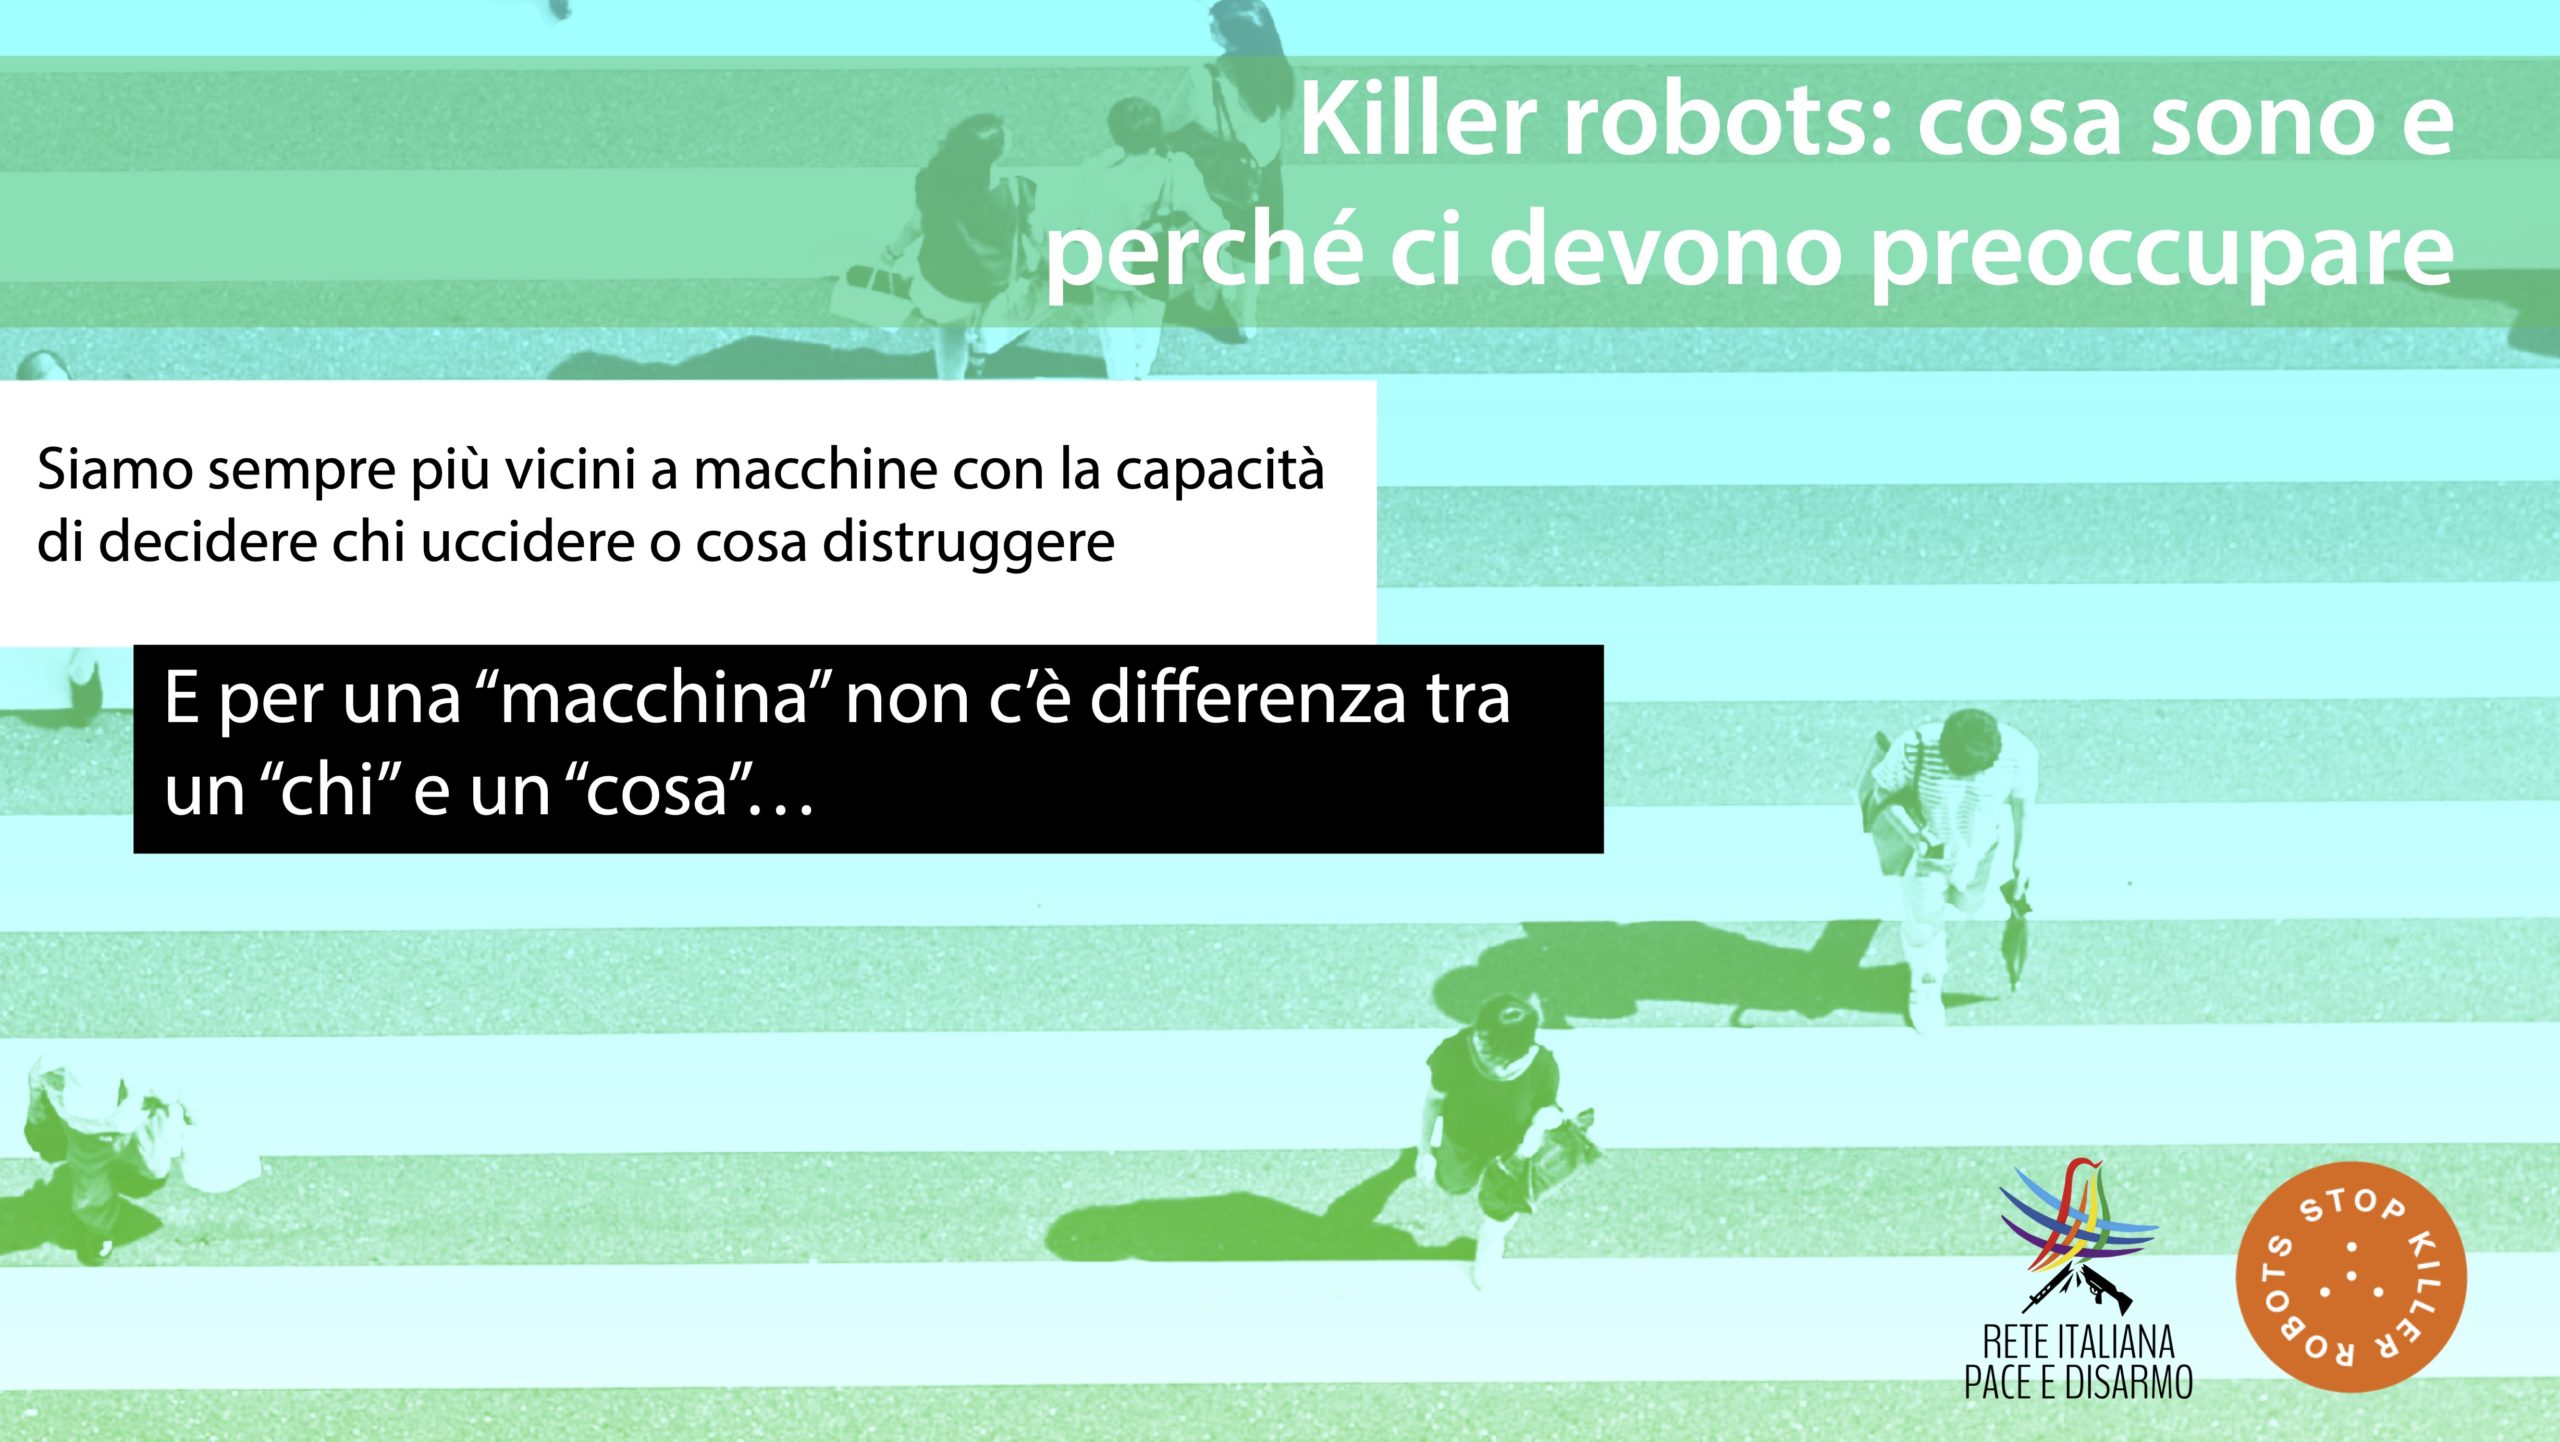 Killer robots: cosa sono e perché ci devono preoccupare